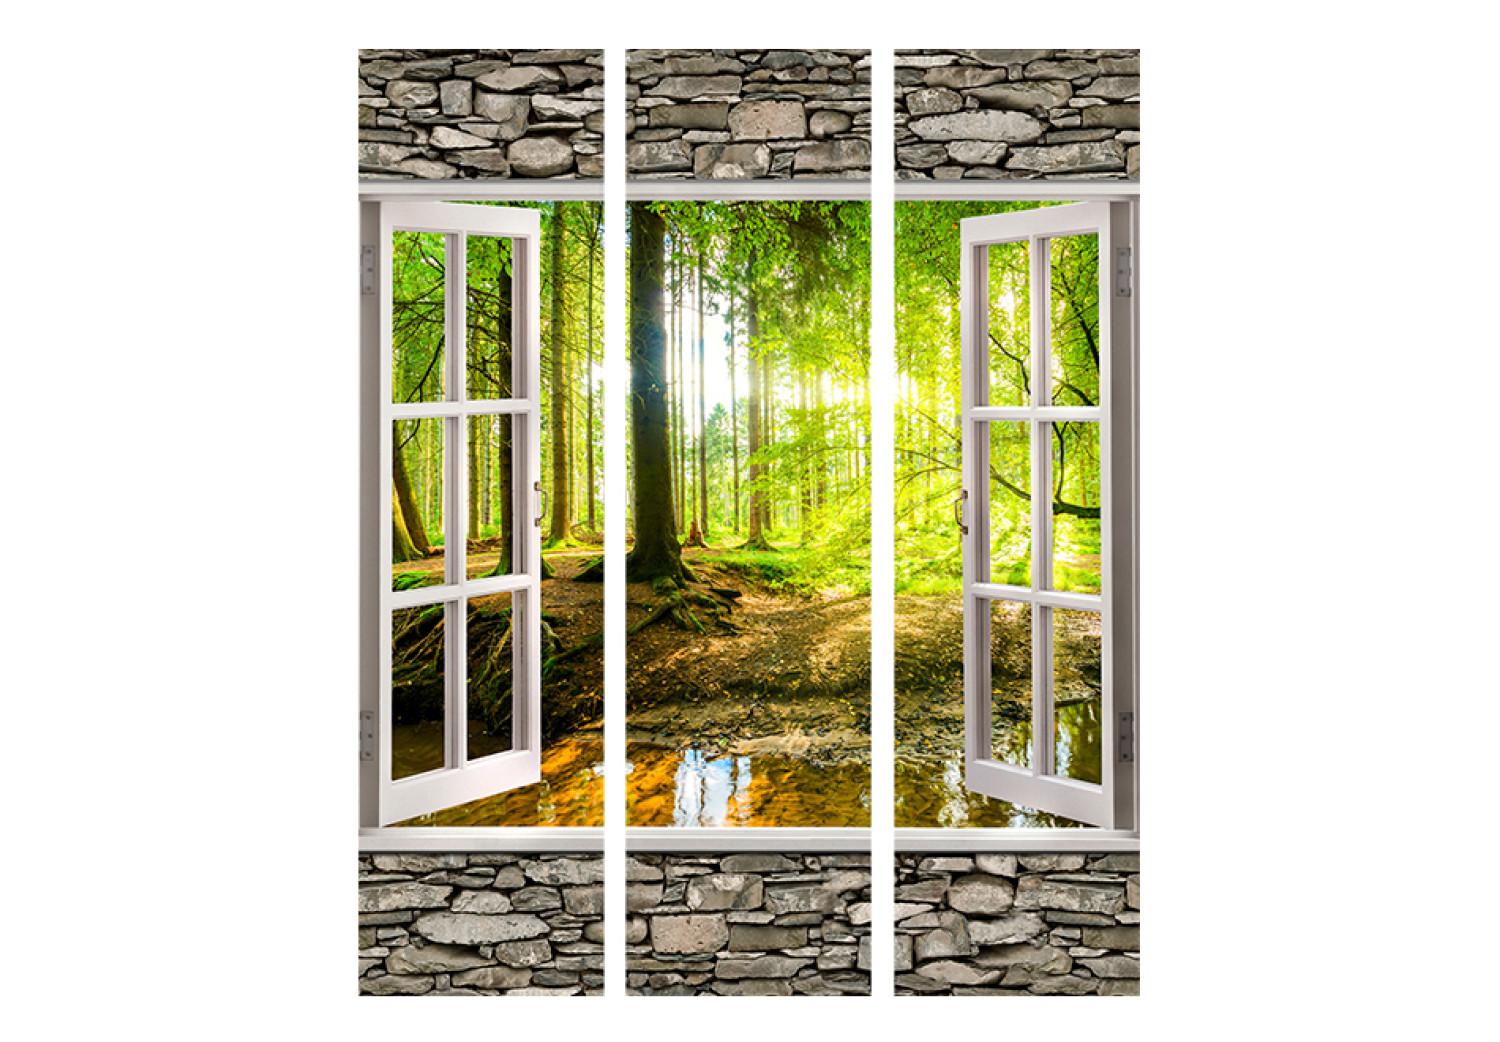 Biombo Bosque mañana - textura piedra ventana vista bosque